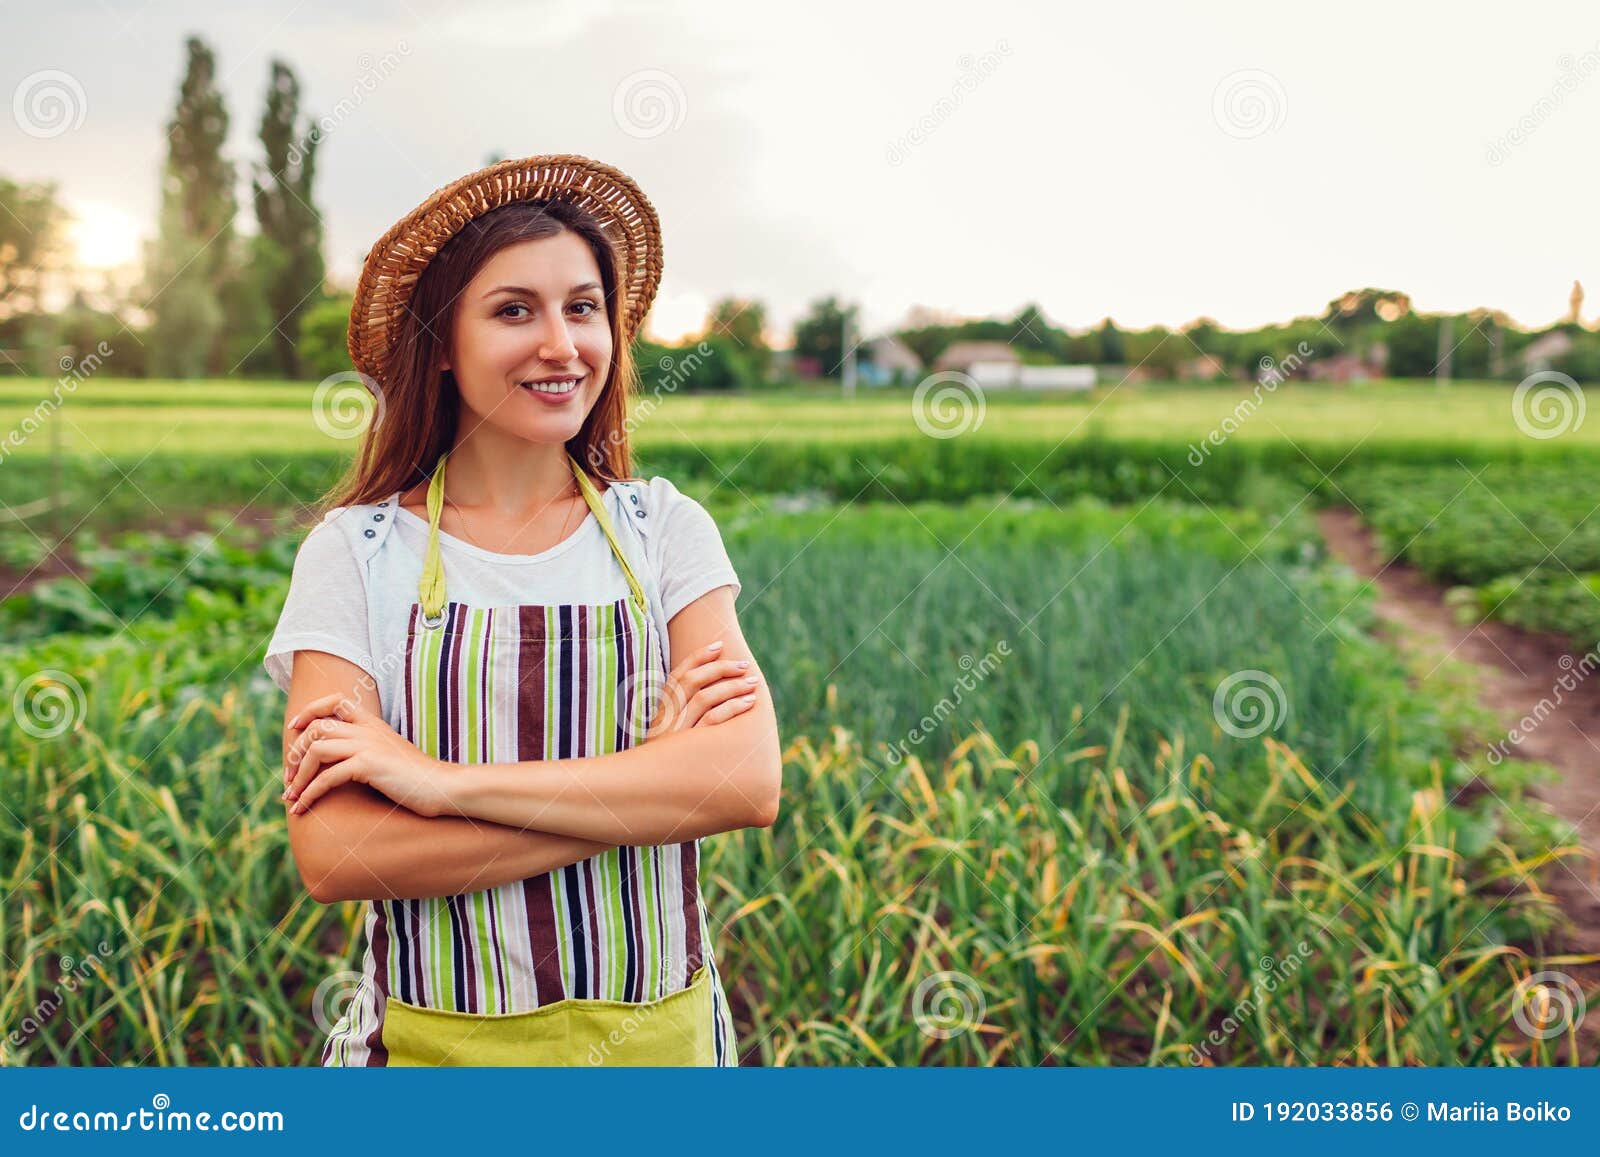 Frau landwirtschaft sucht mann